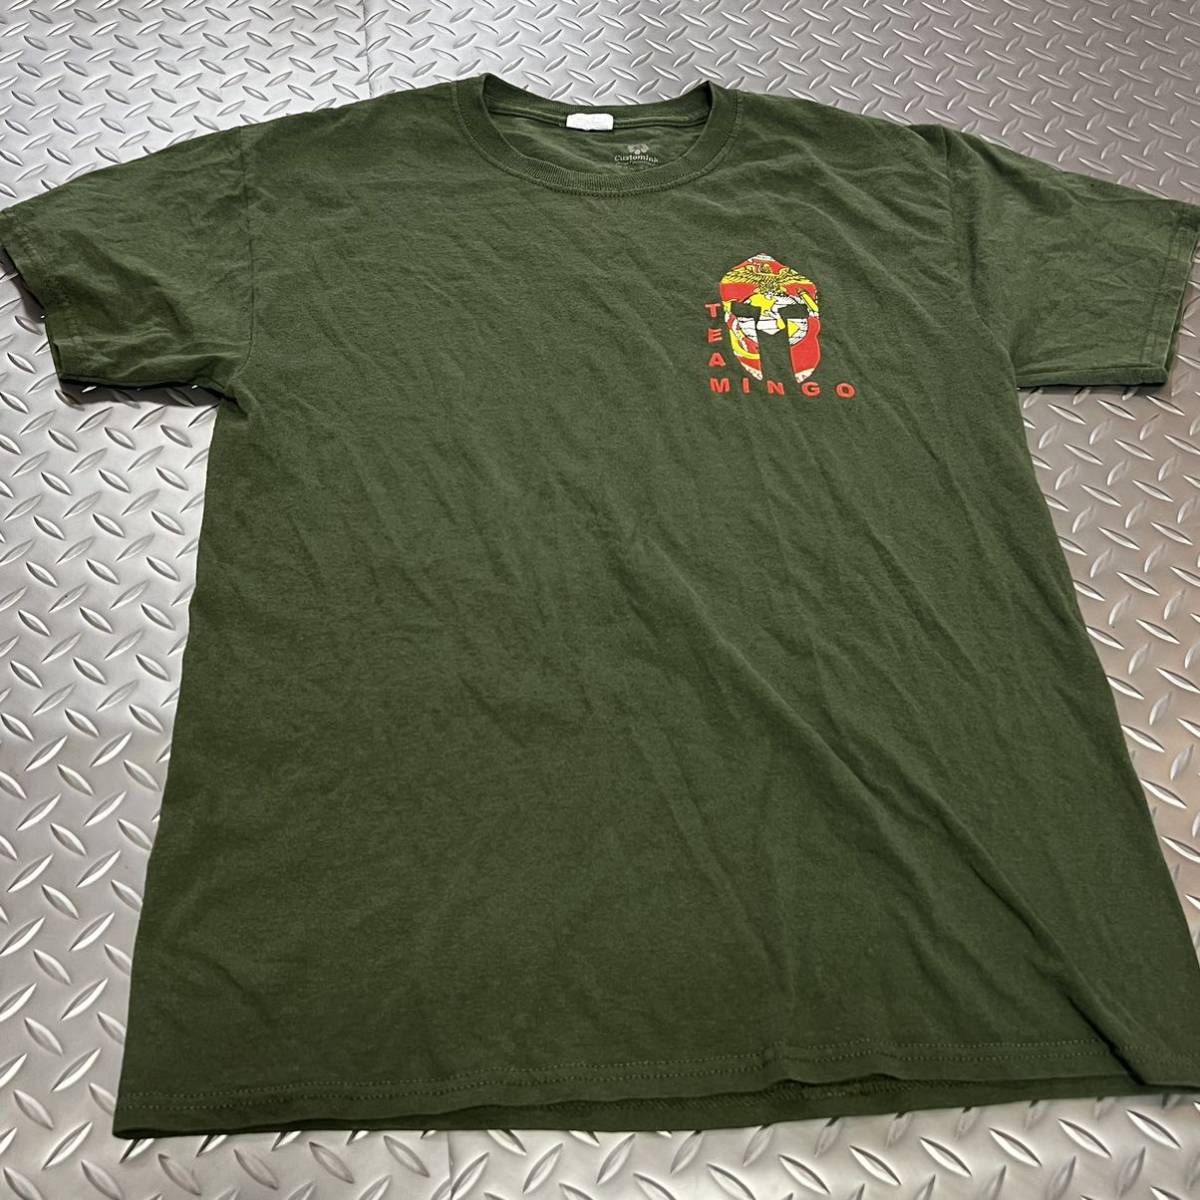 米軍放出品 Tシャツ MARINES MEDIUM サバゲー OD トレーニング ランニング  (INV B#09)の画像1